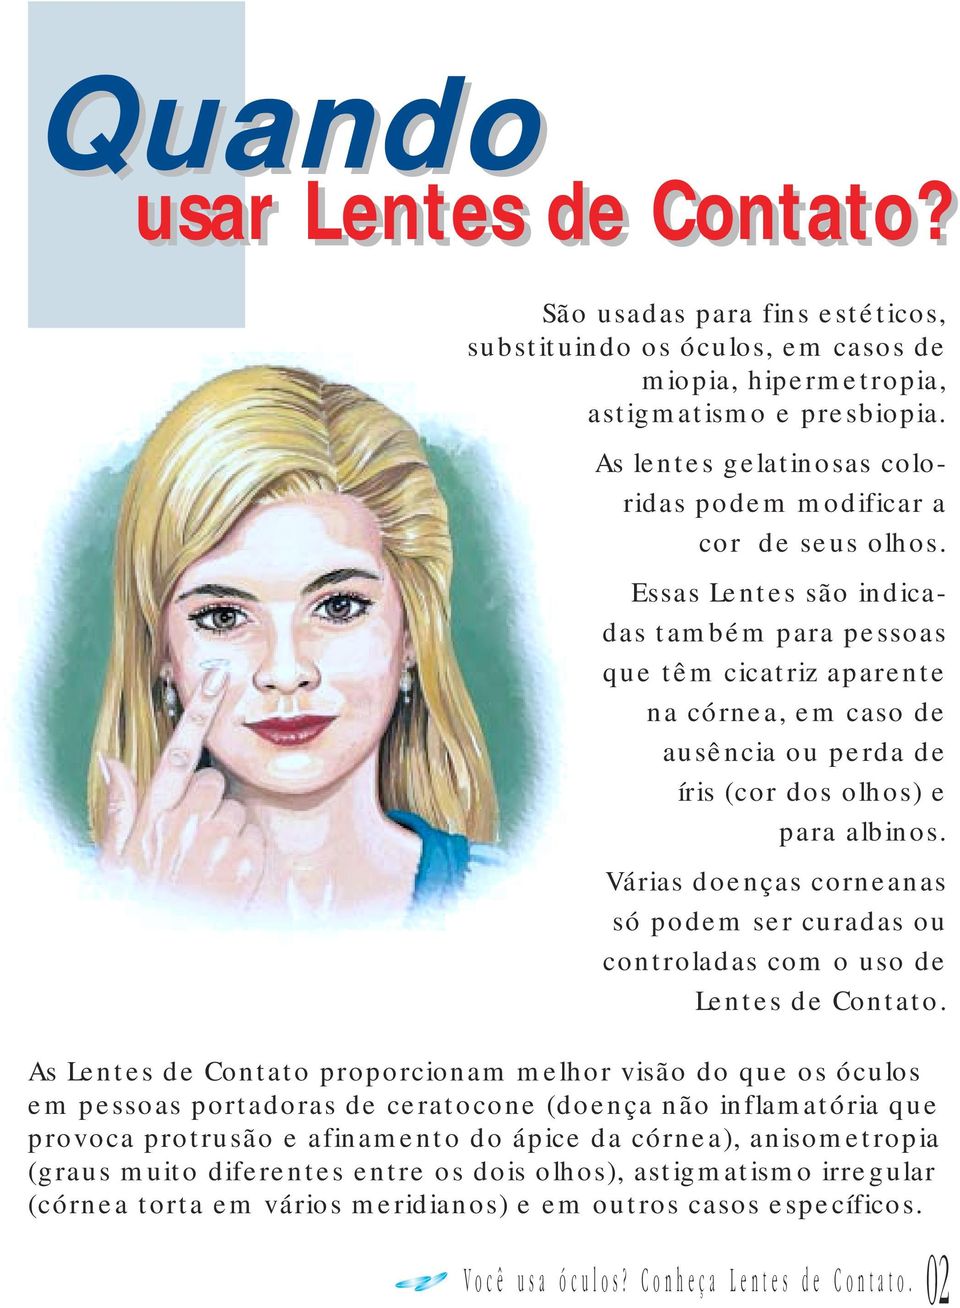 Essas Lentes são indicadas também para pessoas que têm cicatriz aparente na córnea, em caso de ausência ou perda de íris (cor dos olhos) e para albinos.